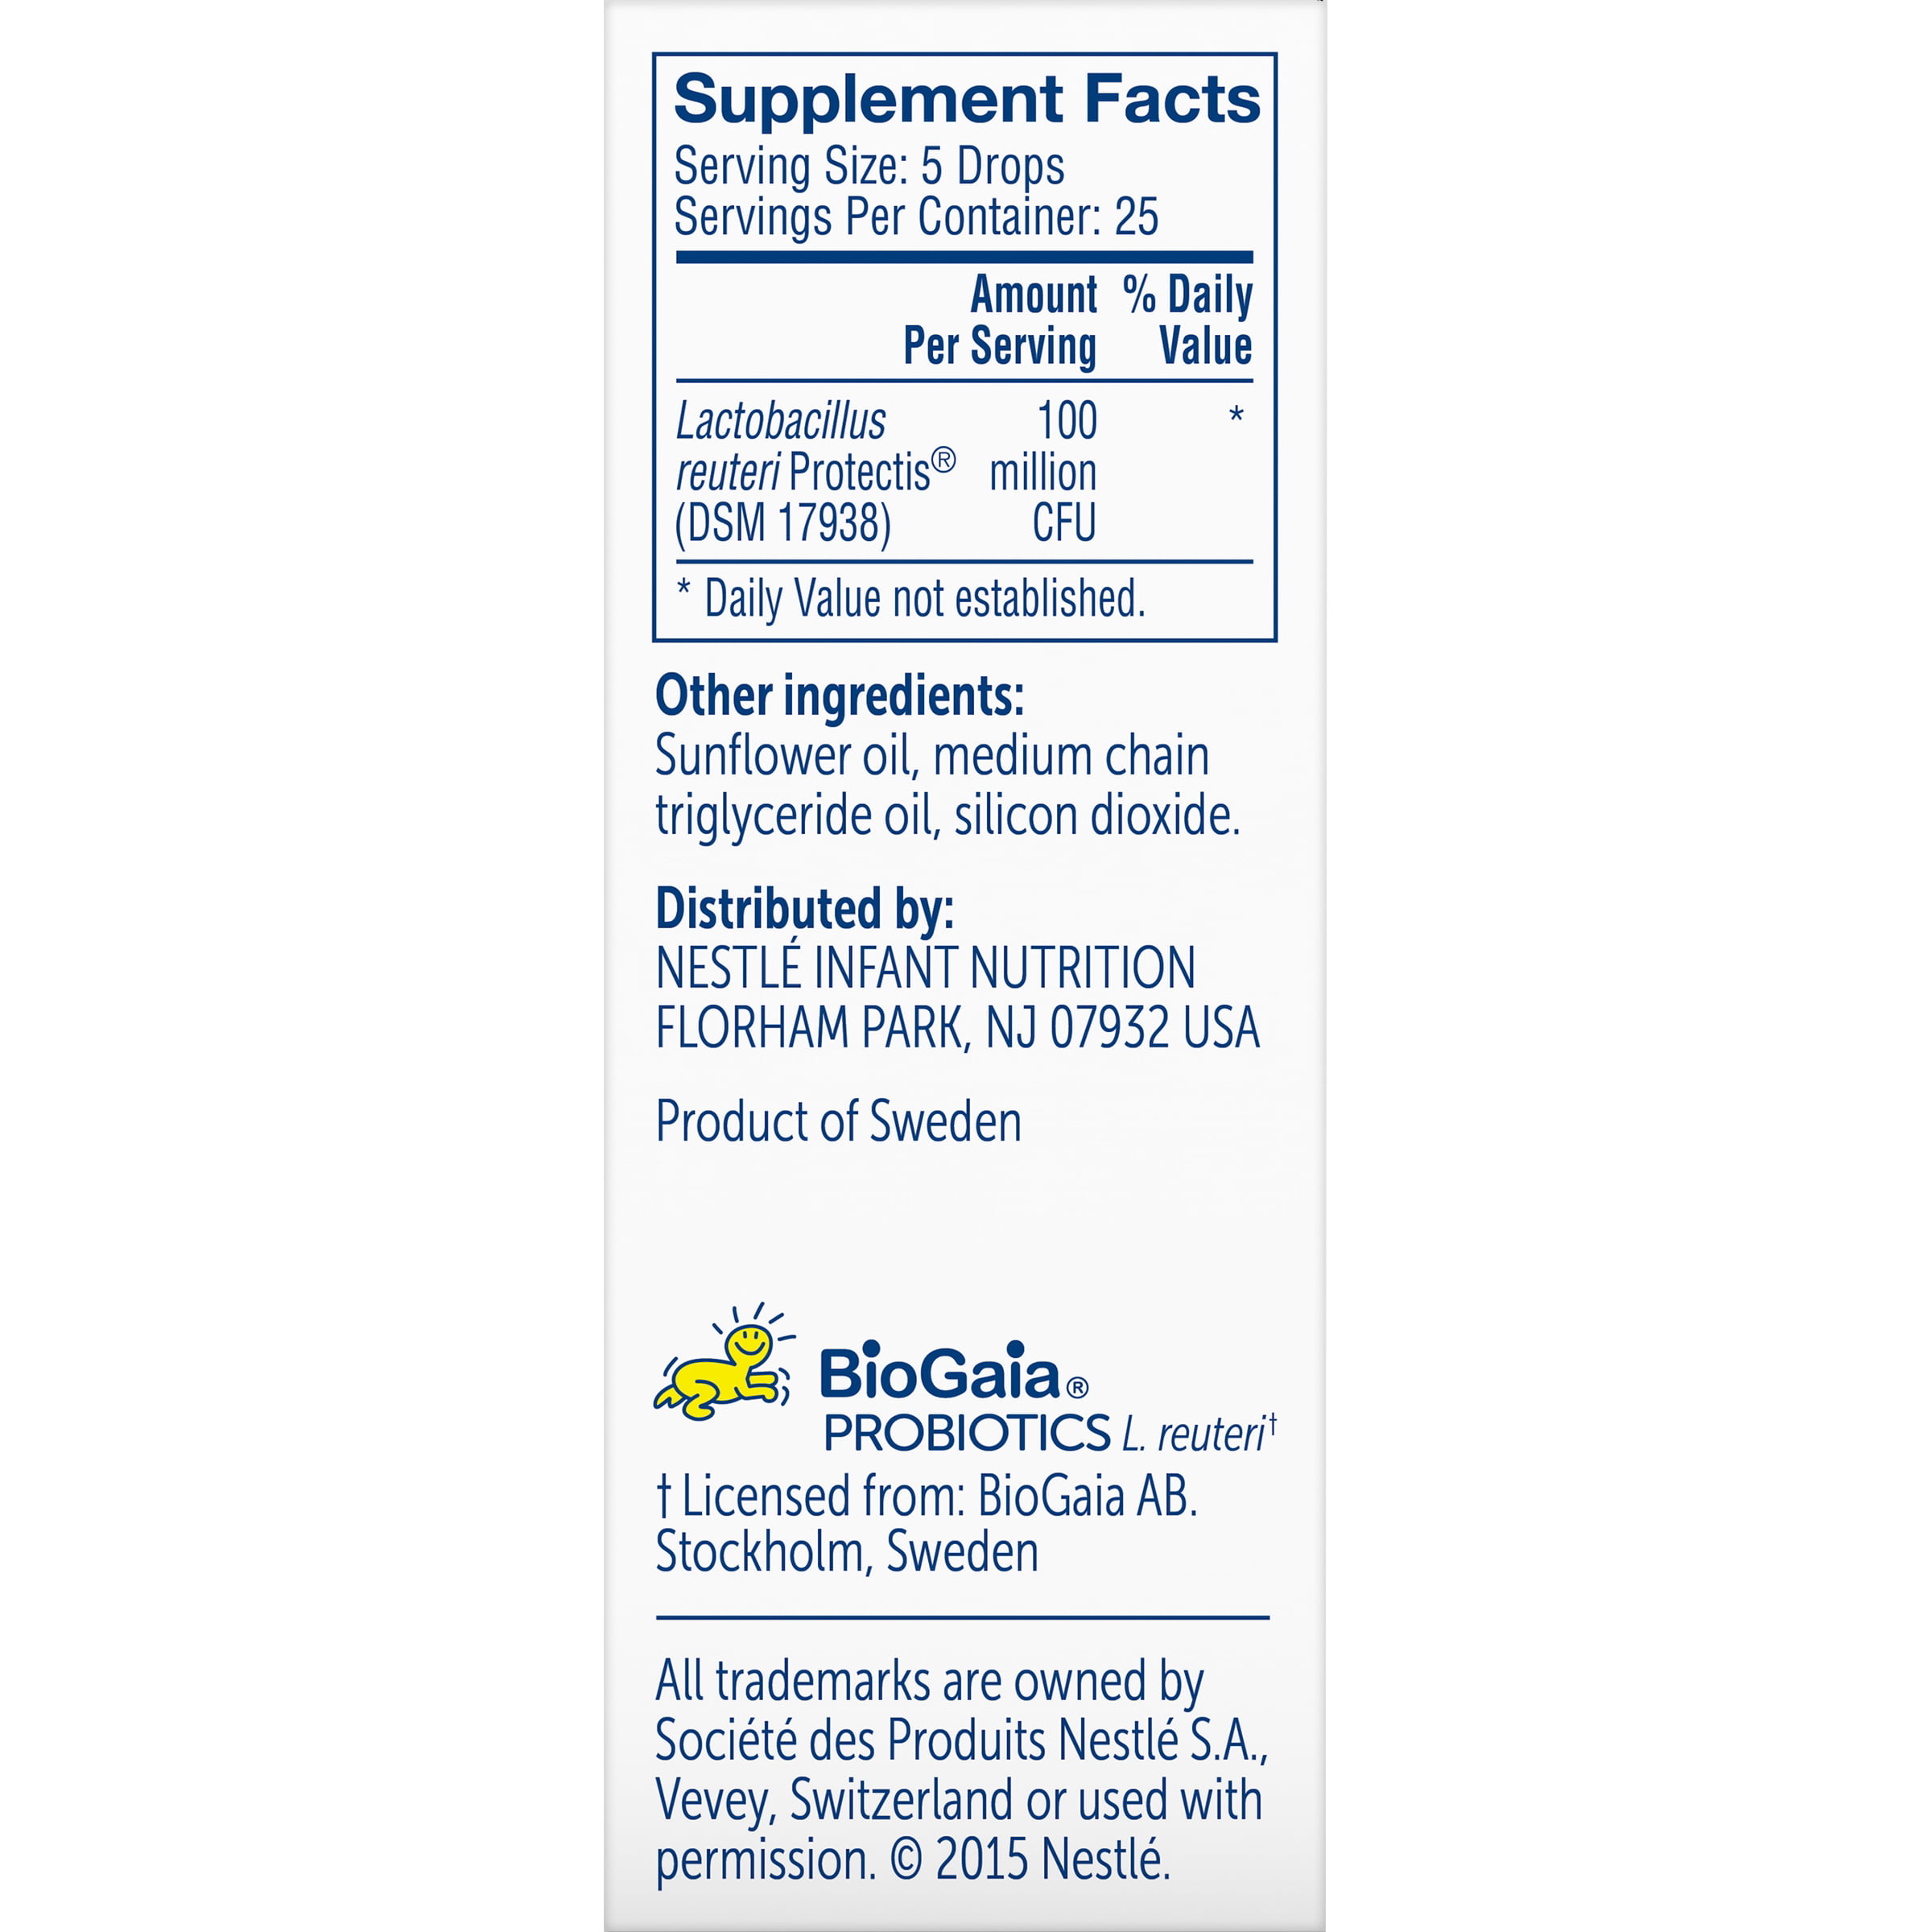 Gerber® Soothe Probiotic Colic Drops, 0 